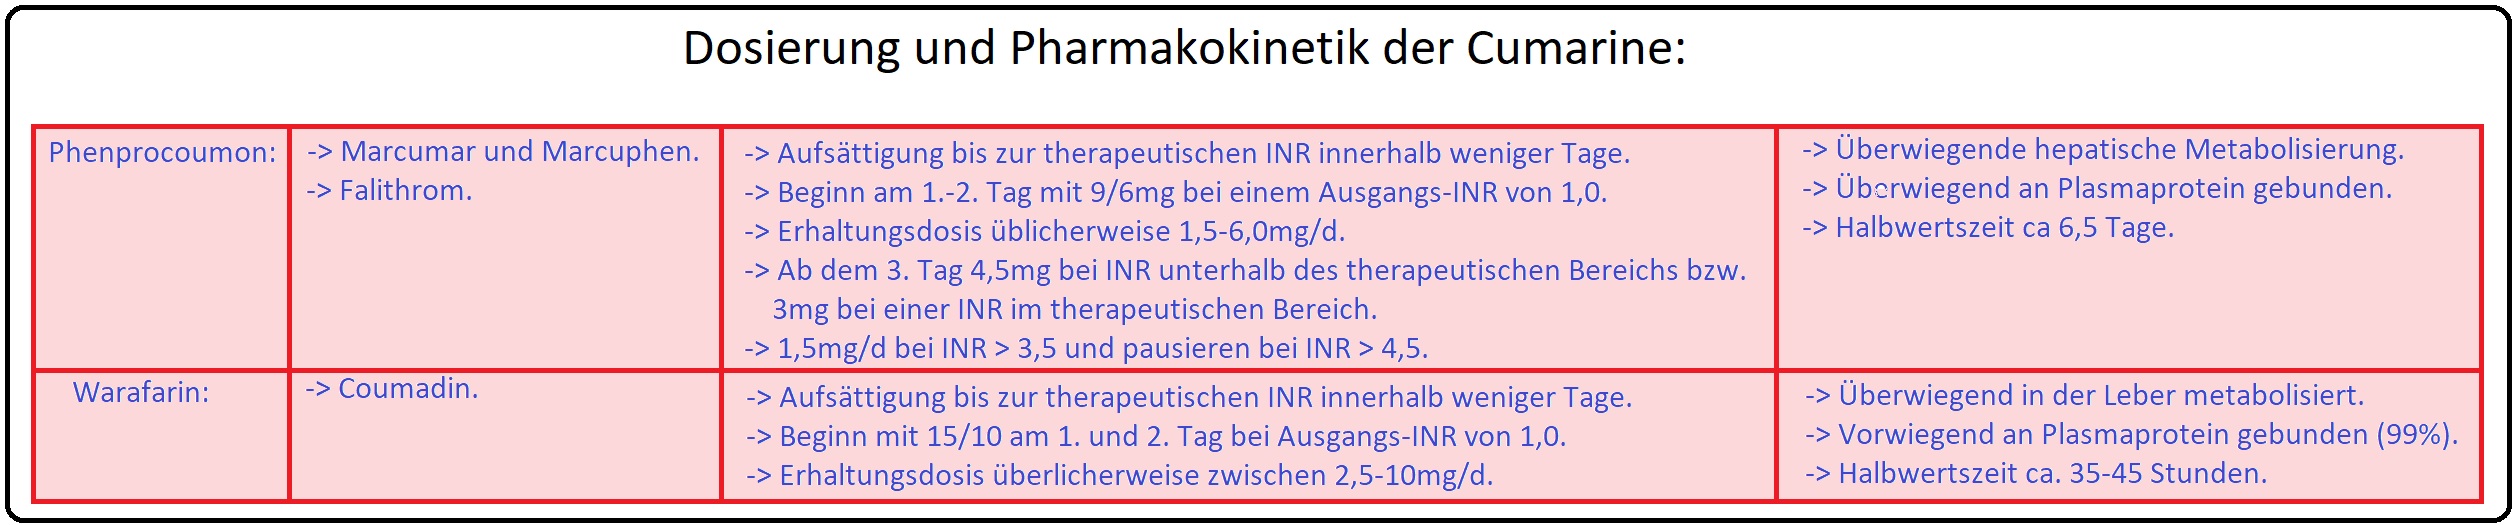 88 Dosierung und Pharmakokinetik der Cumarine